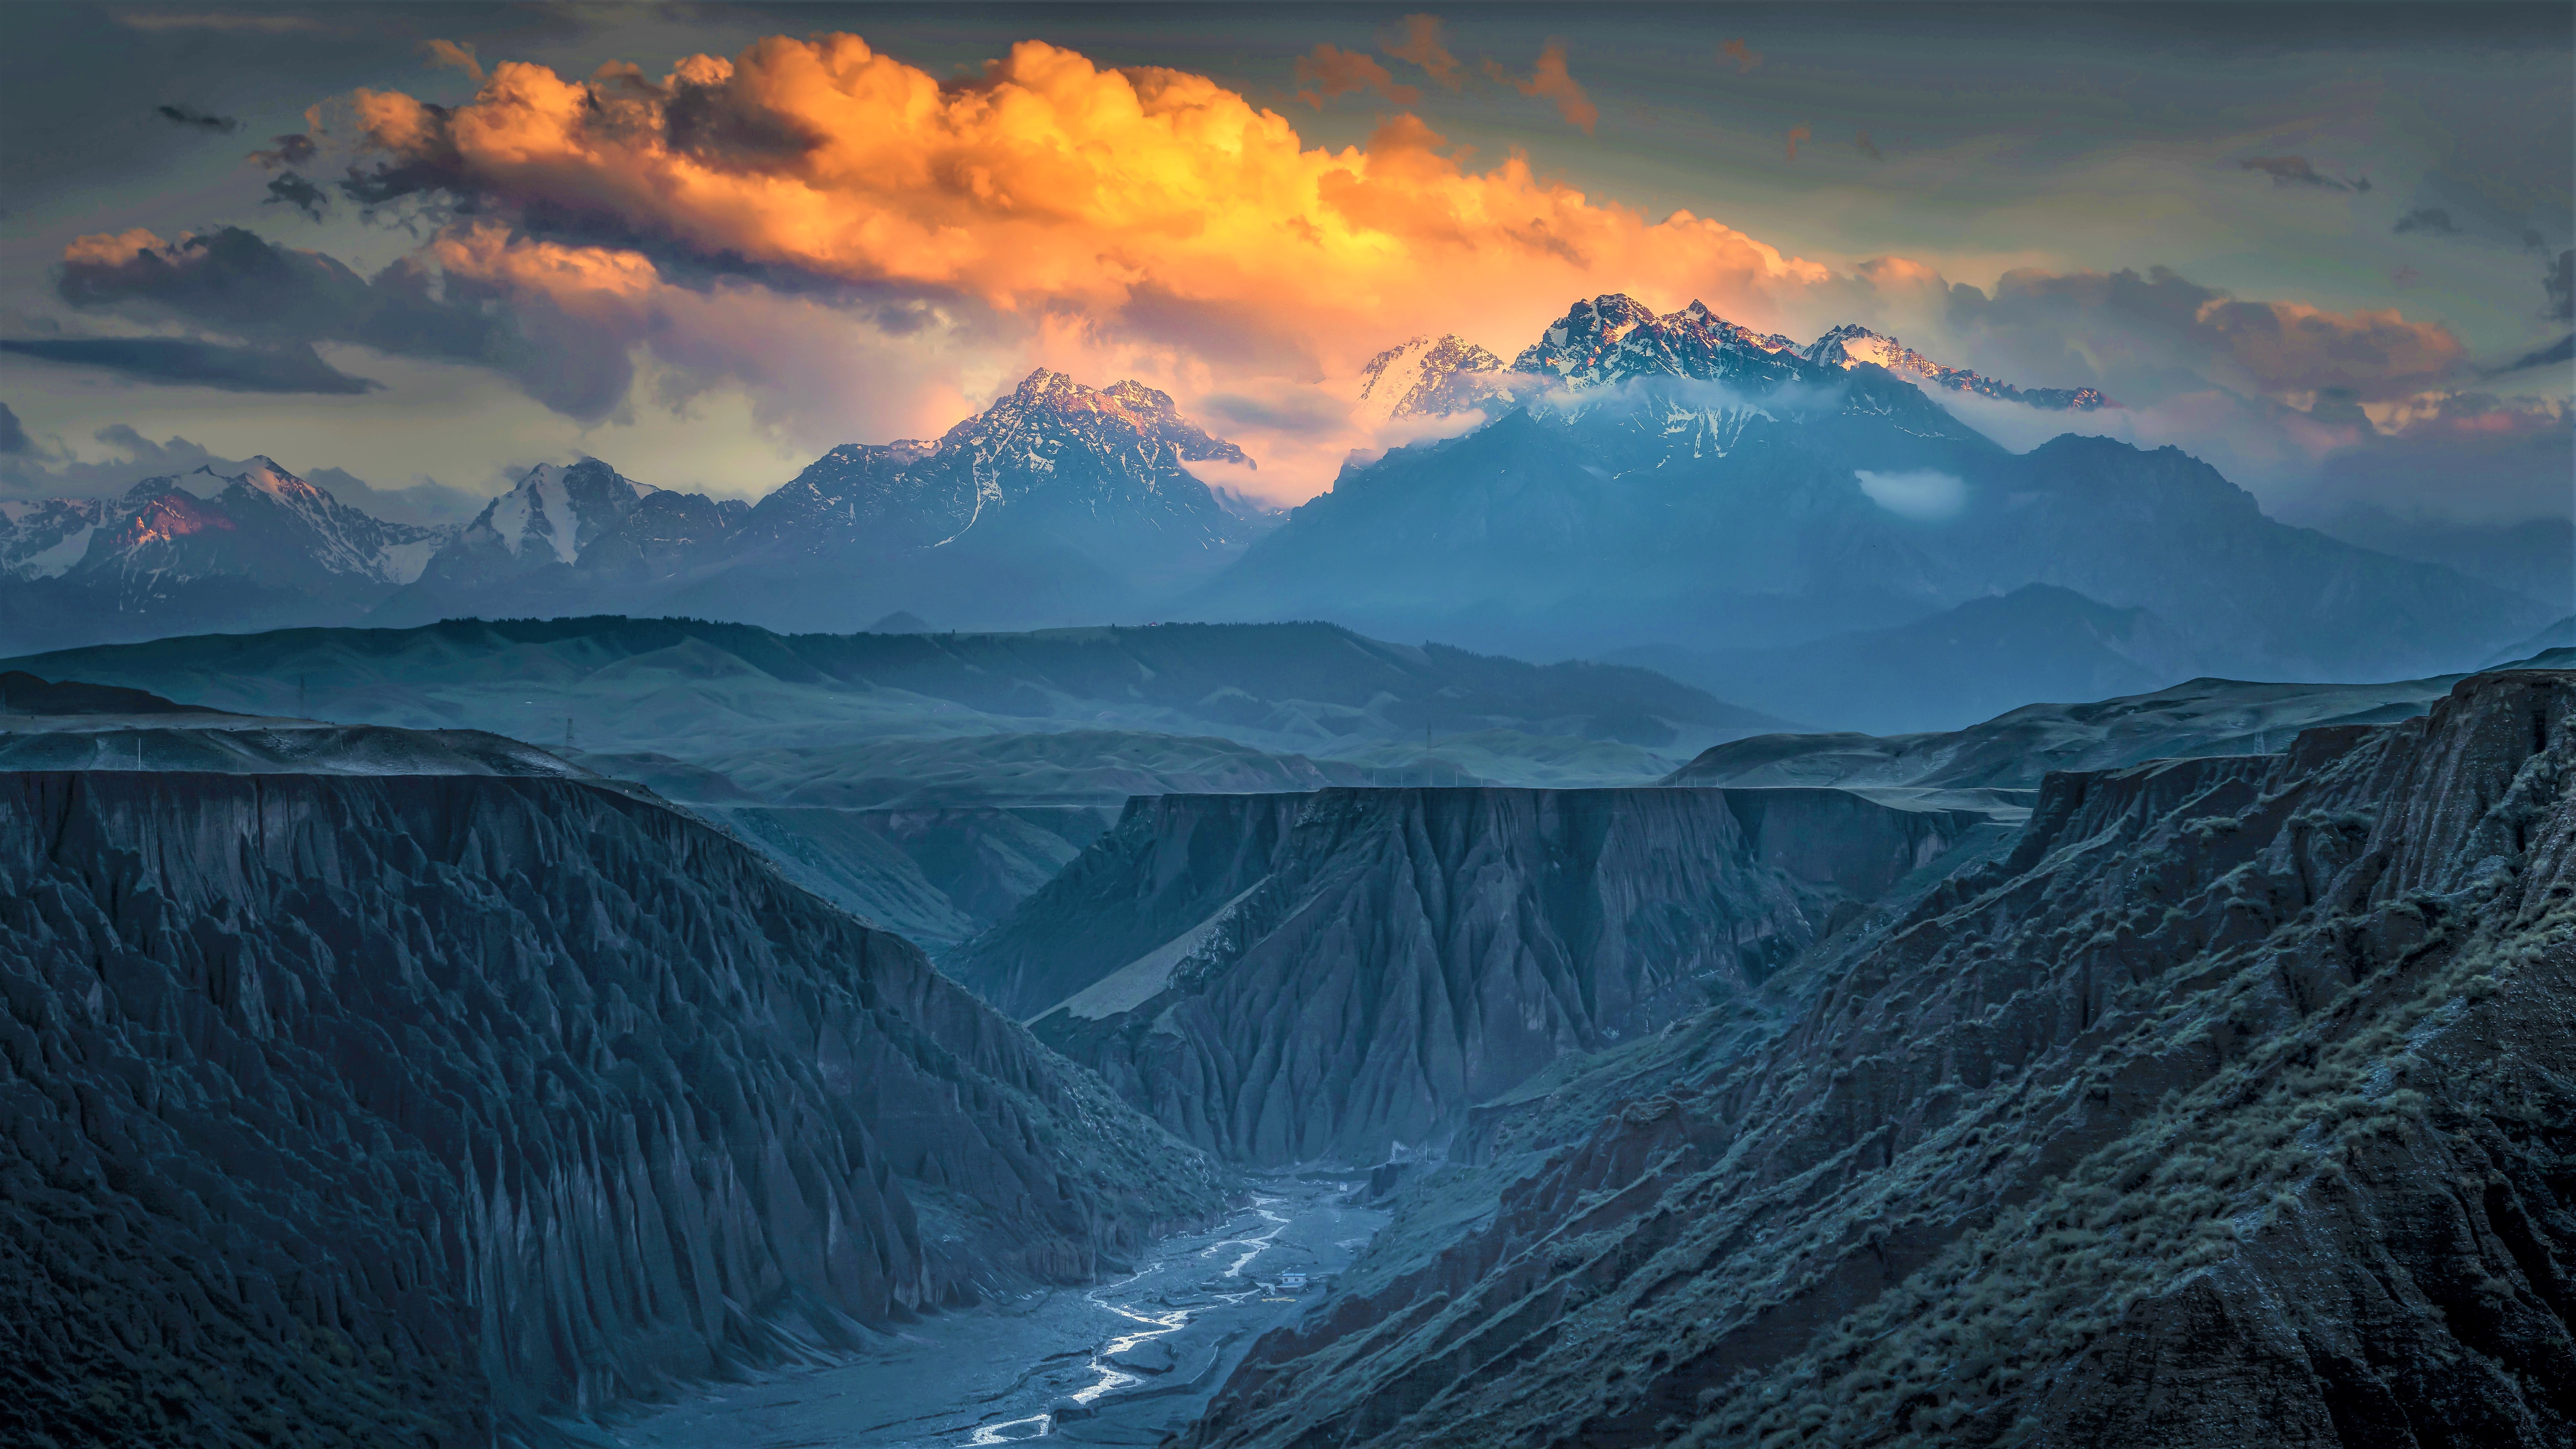 Anjihai grand canyon, Xinjiang, China. Photo by Zhou Xian